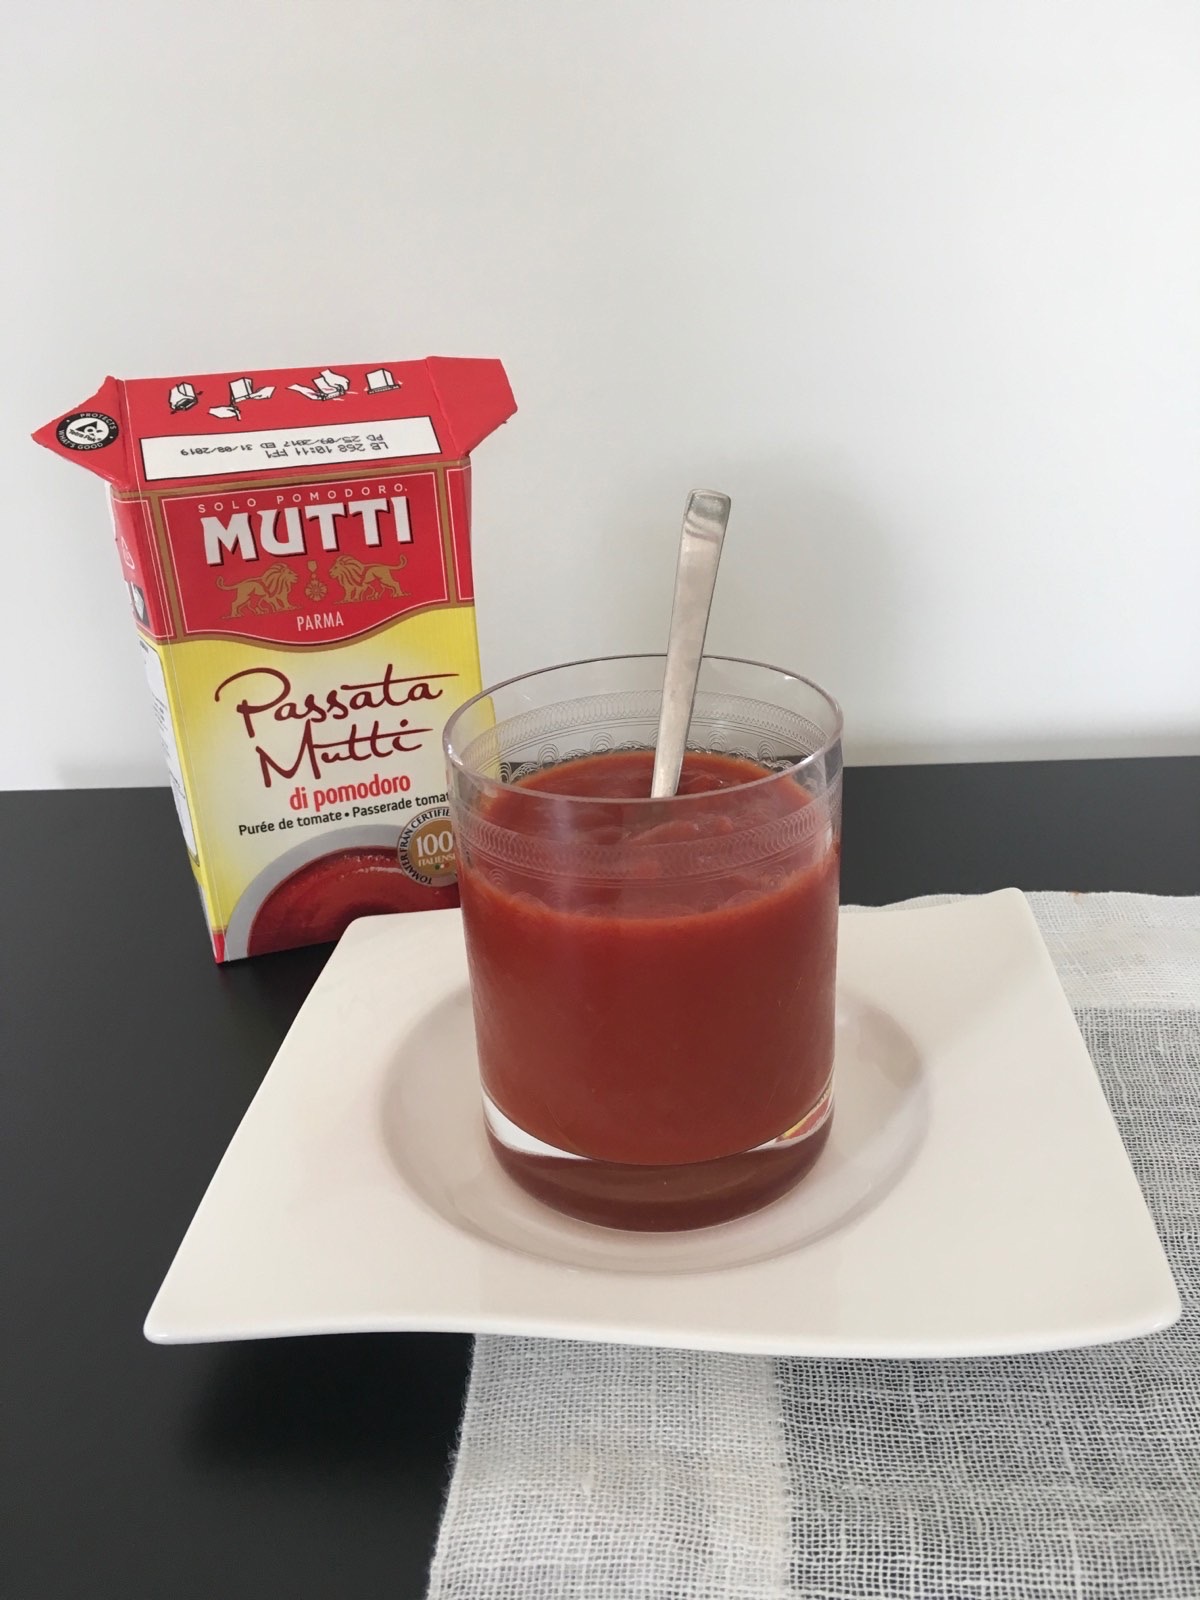 Mutti passata - vaša kulinarska destinacija!